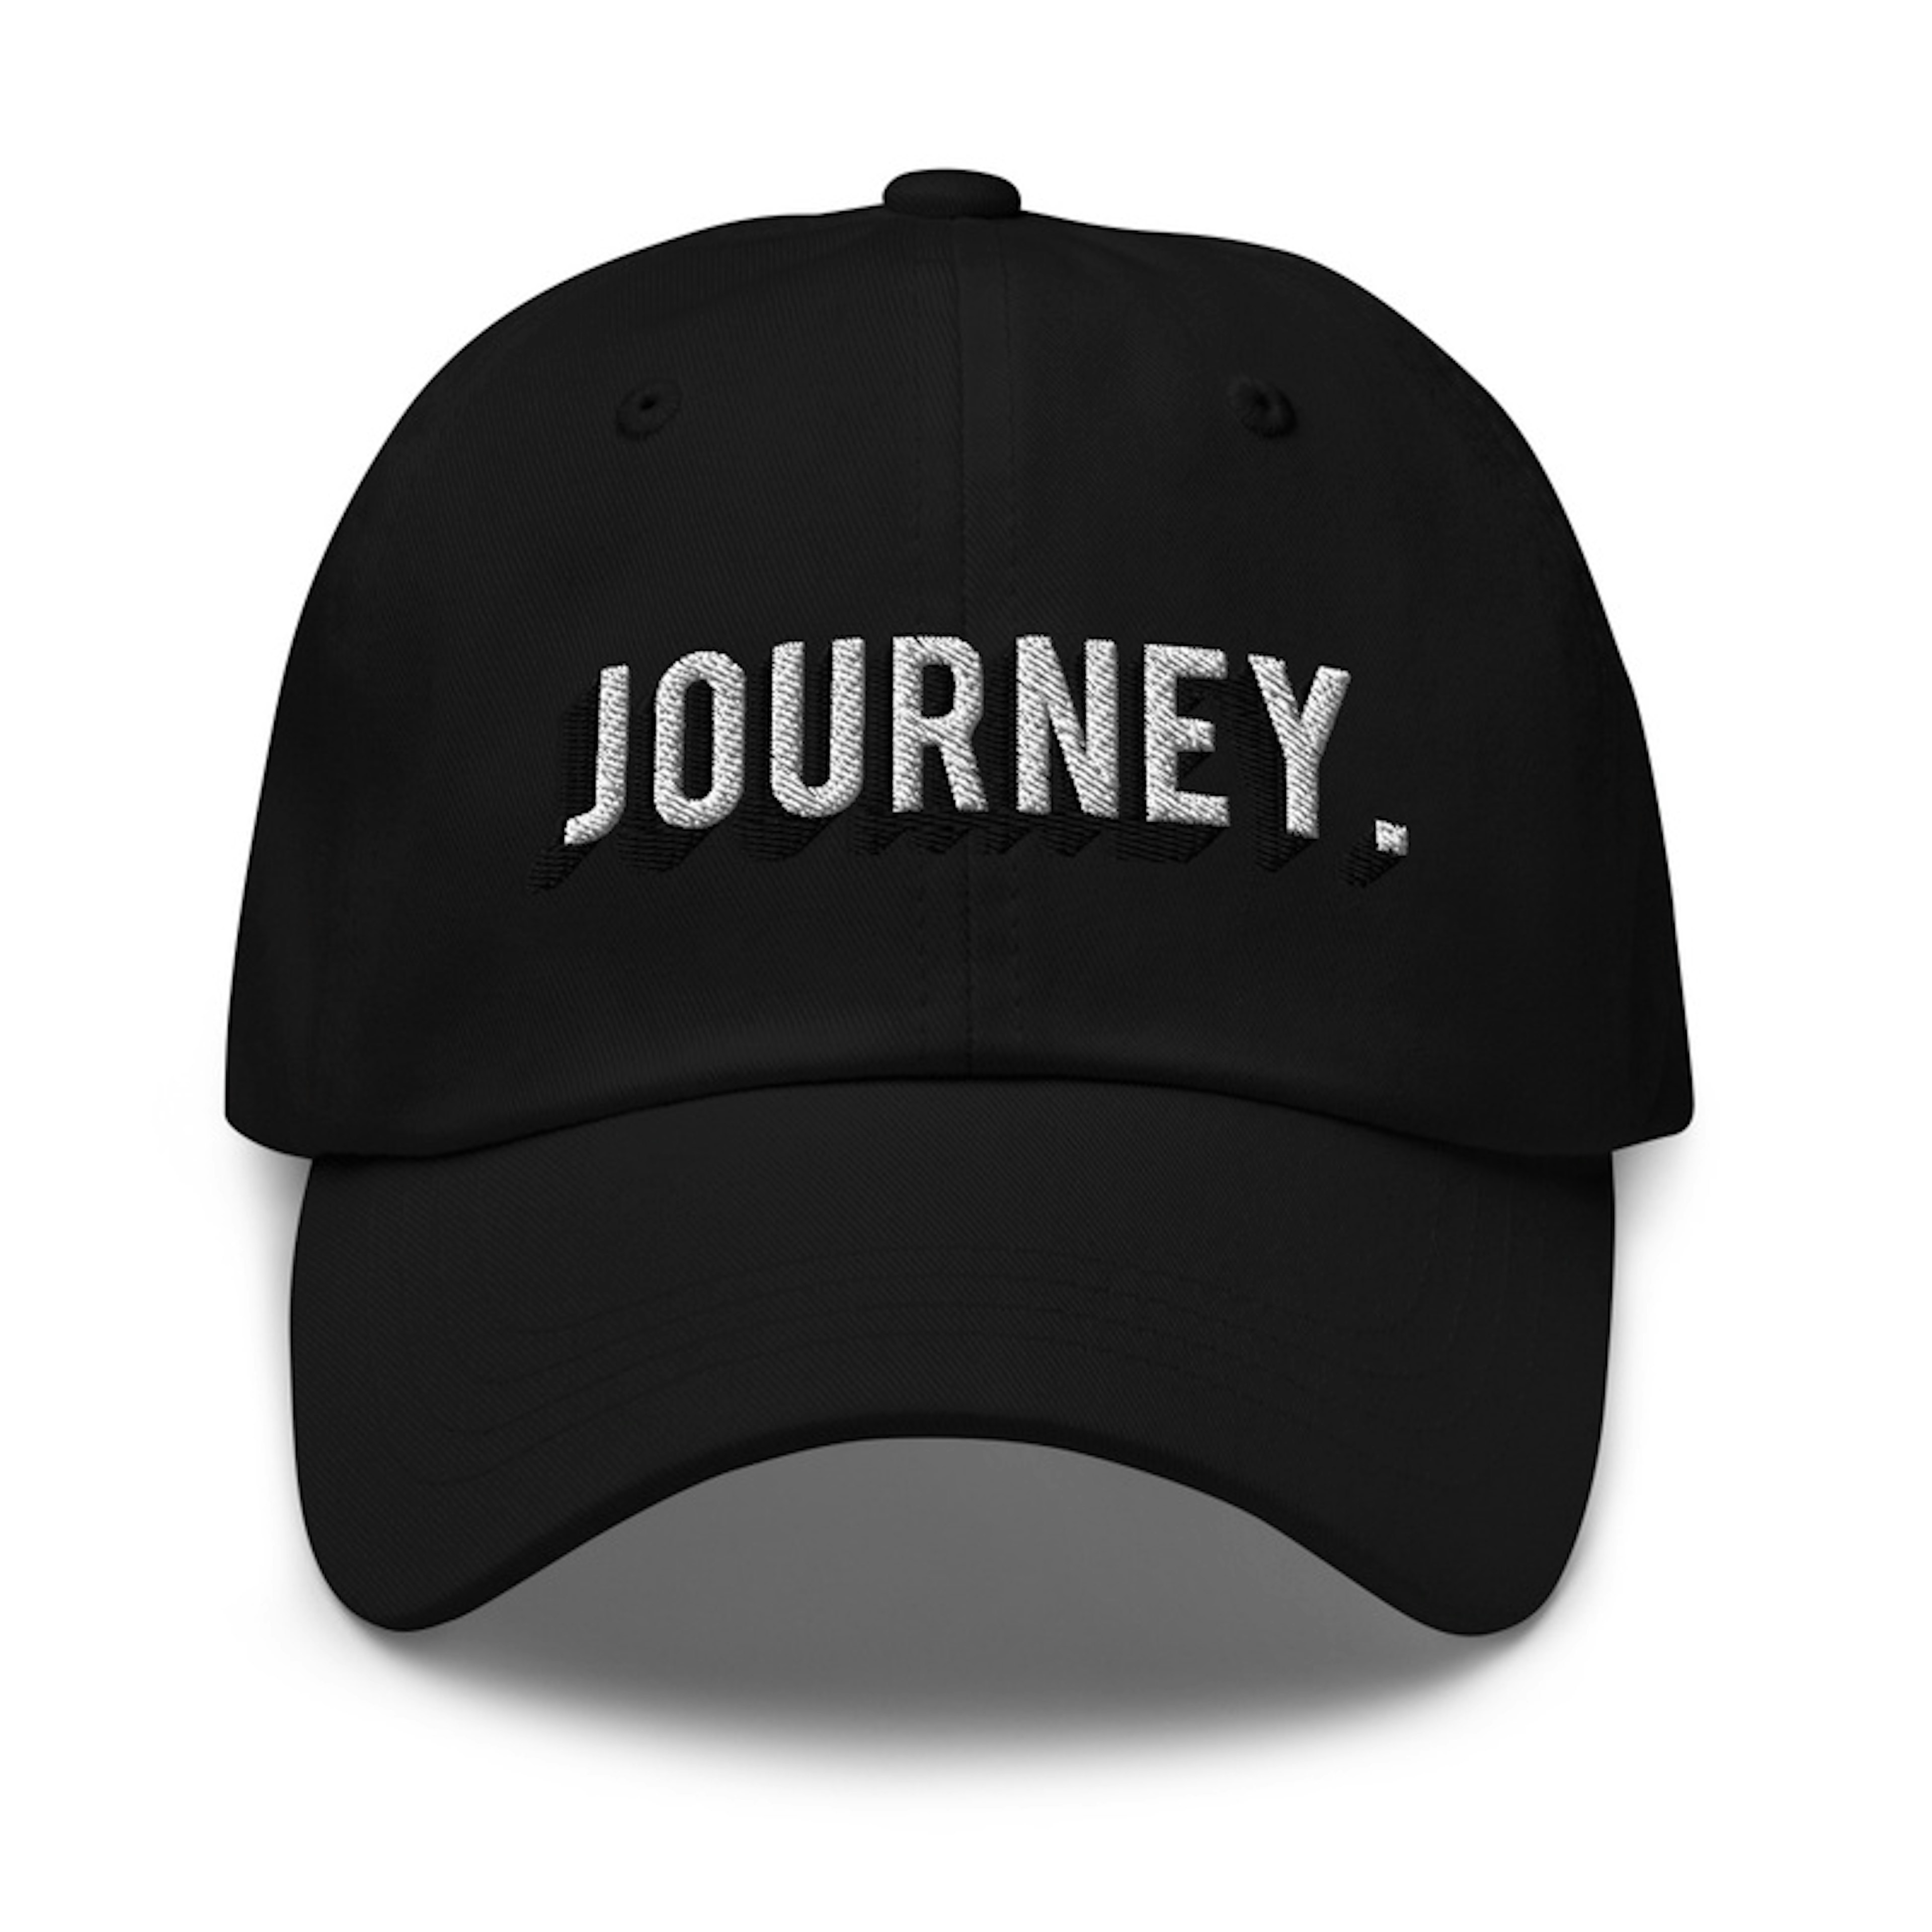 Journey BnW